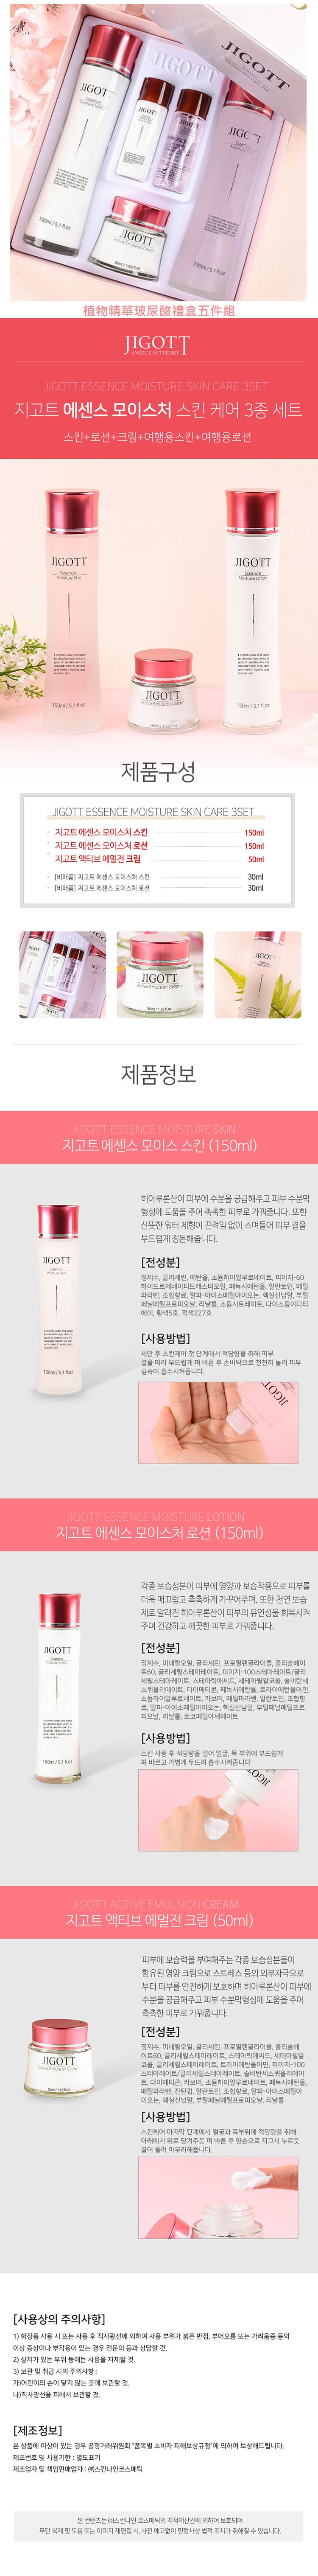 韓國 臉部保養 化妝水 臉部保養 臉部保養 乳液